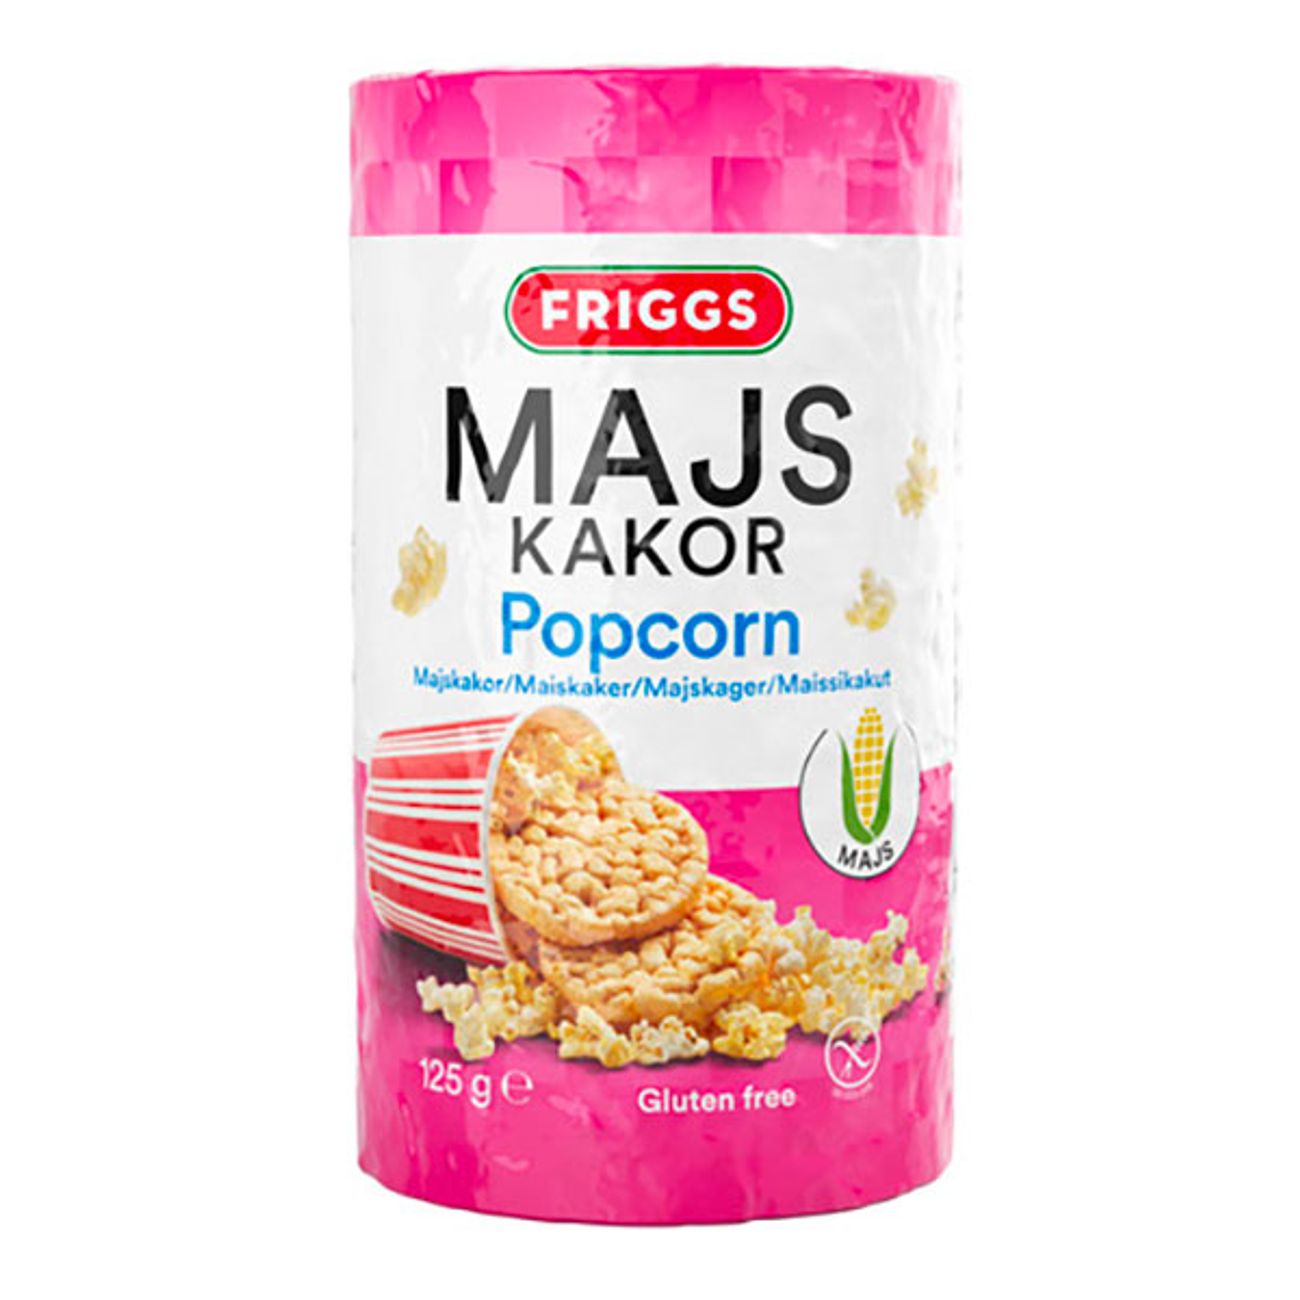 friggs-majskakor-popcorn-72918-1